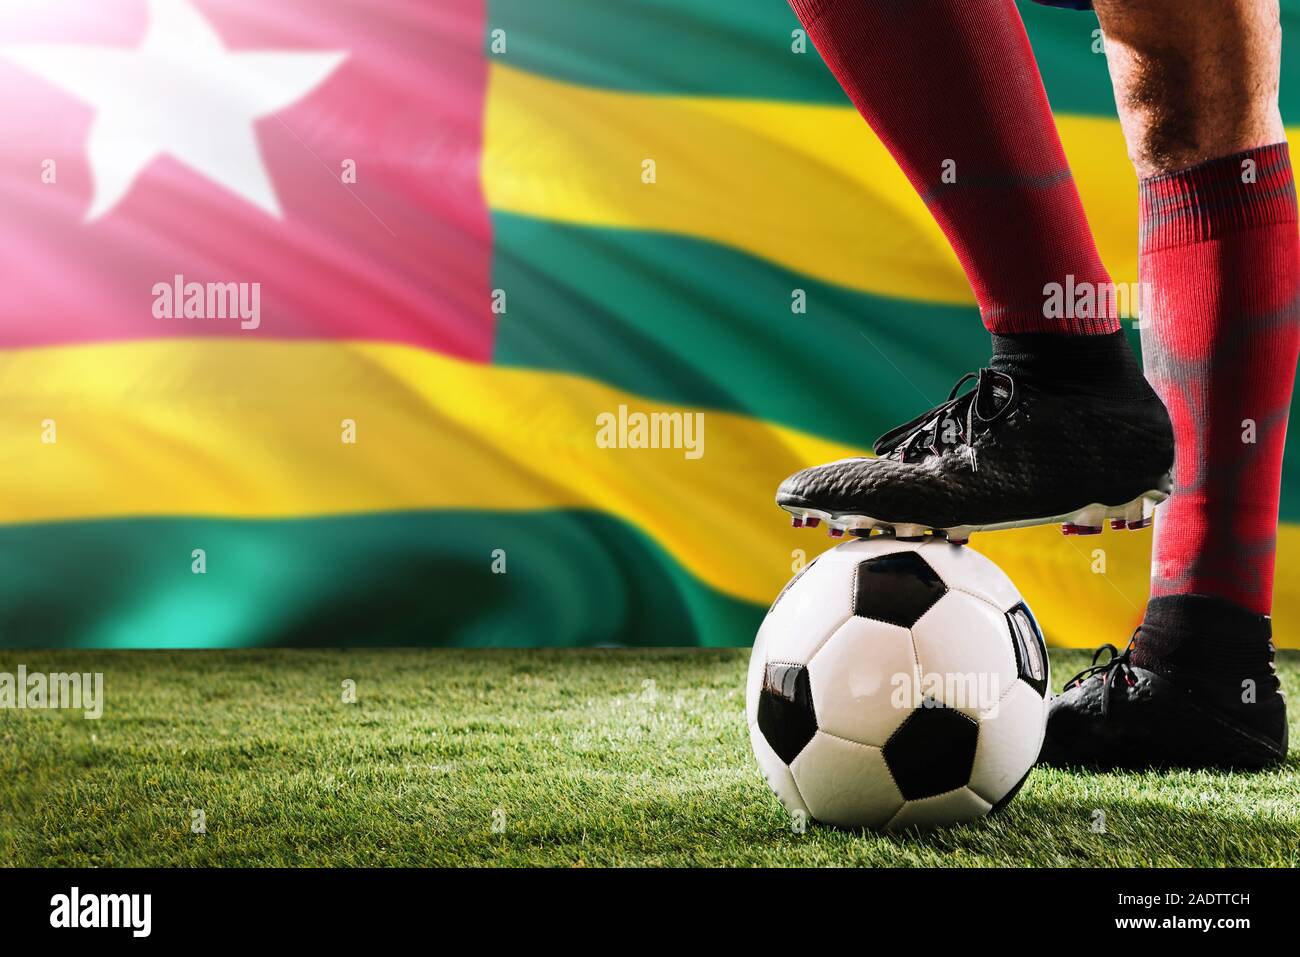 Nahaufnahme Beine von Togo Football Team Player in roten Socken, Schuhe auf  Fußball im Free Kick oder elfmeterpunkt Spielen auf Gras Stockfotografie -  Alamy